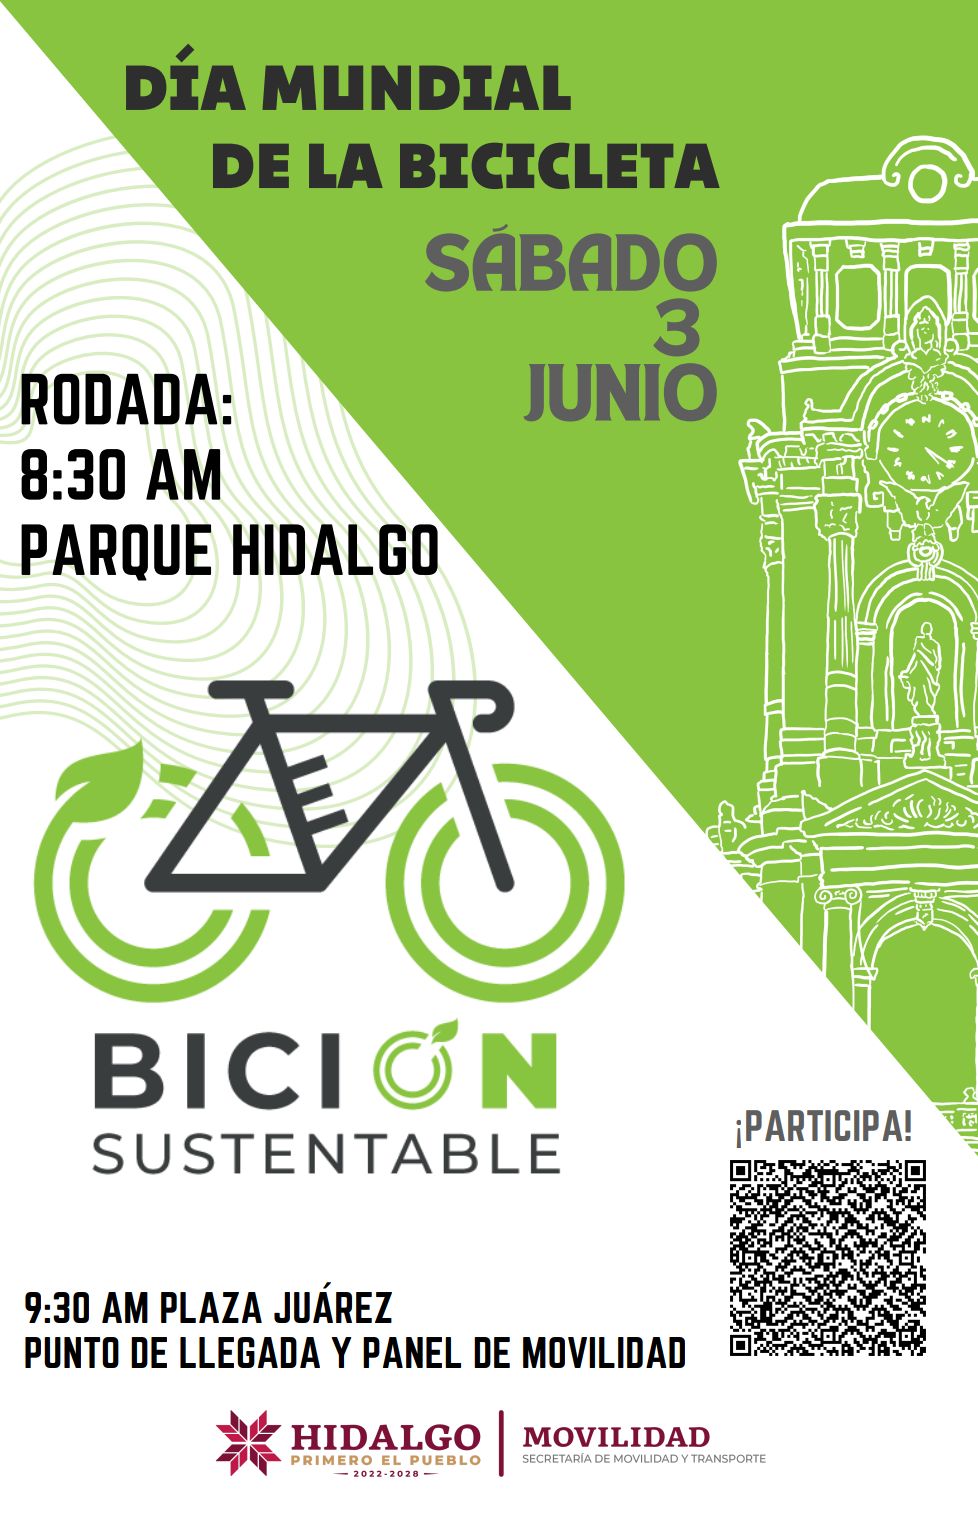 En el marco del día mundial de la bicicleta, Semot invita a rodada y panel de movilidad sustentable